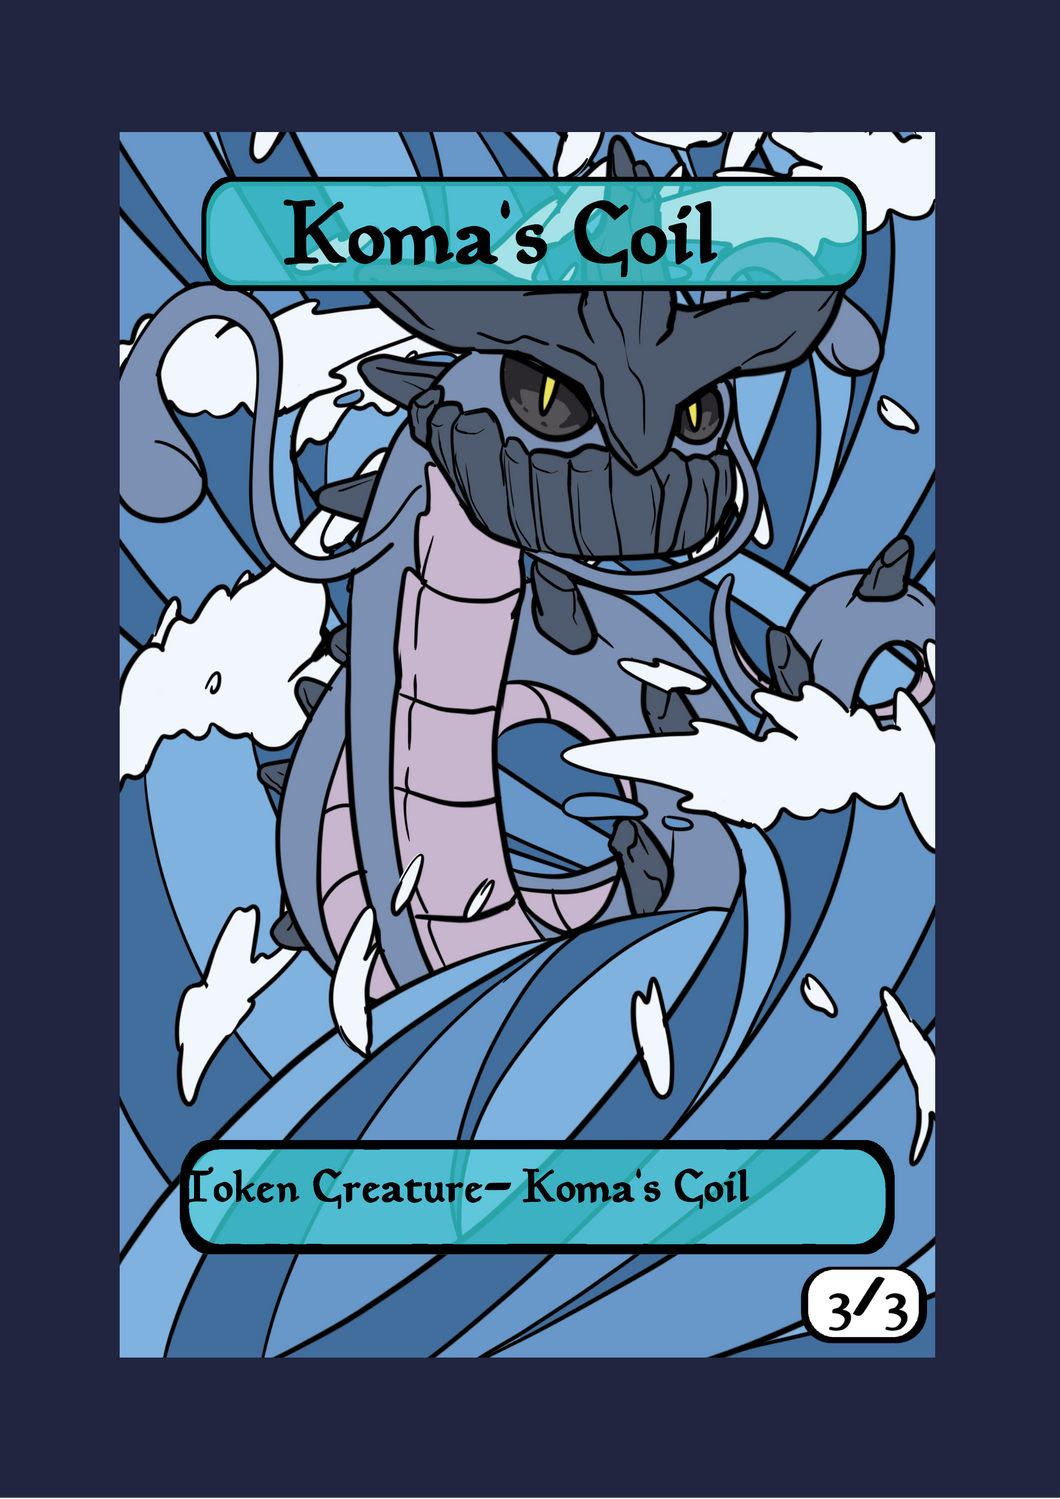 Koma's Coil 3/3 Token